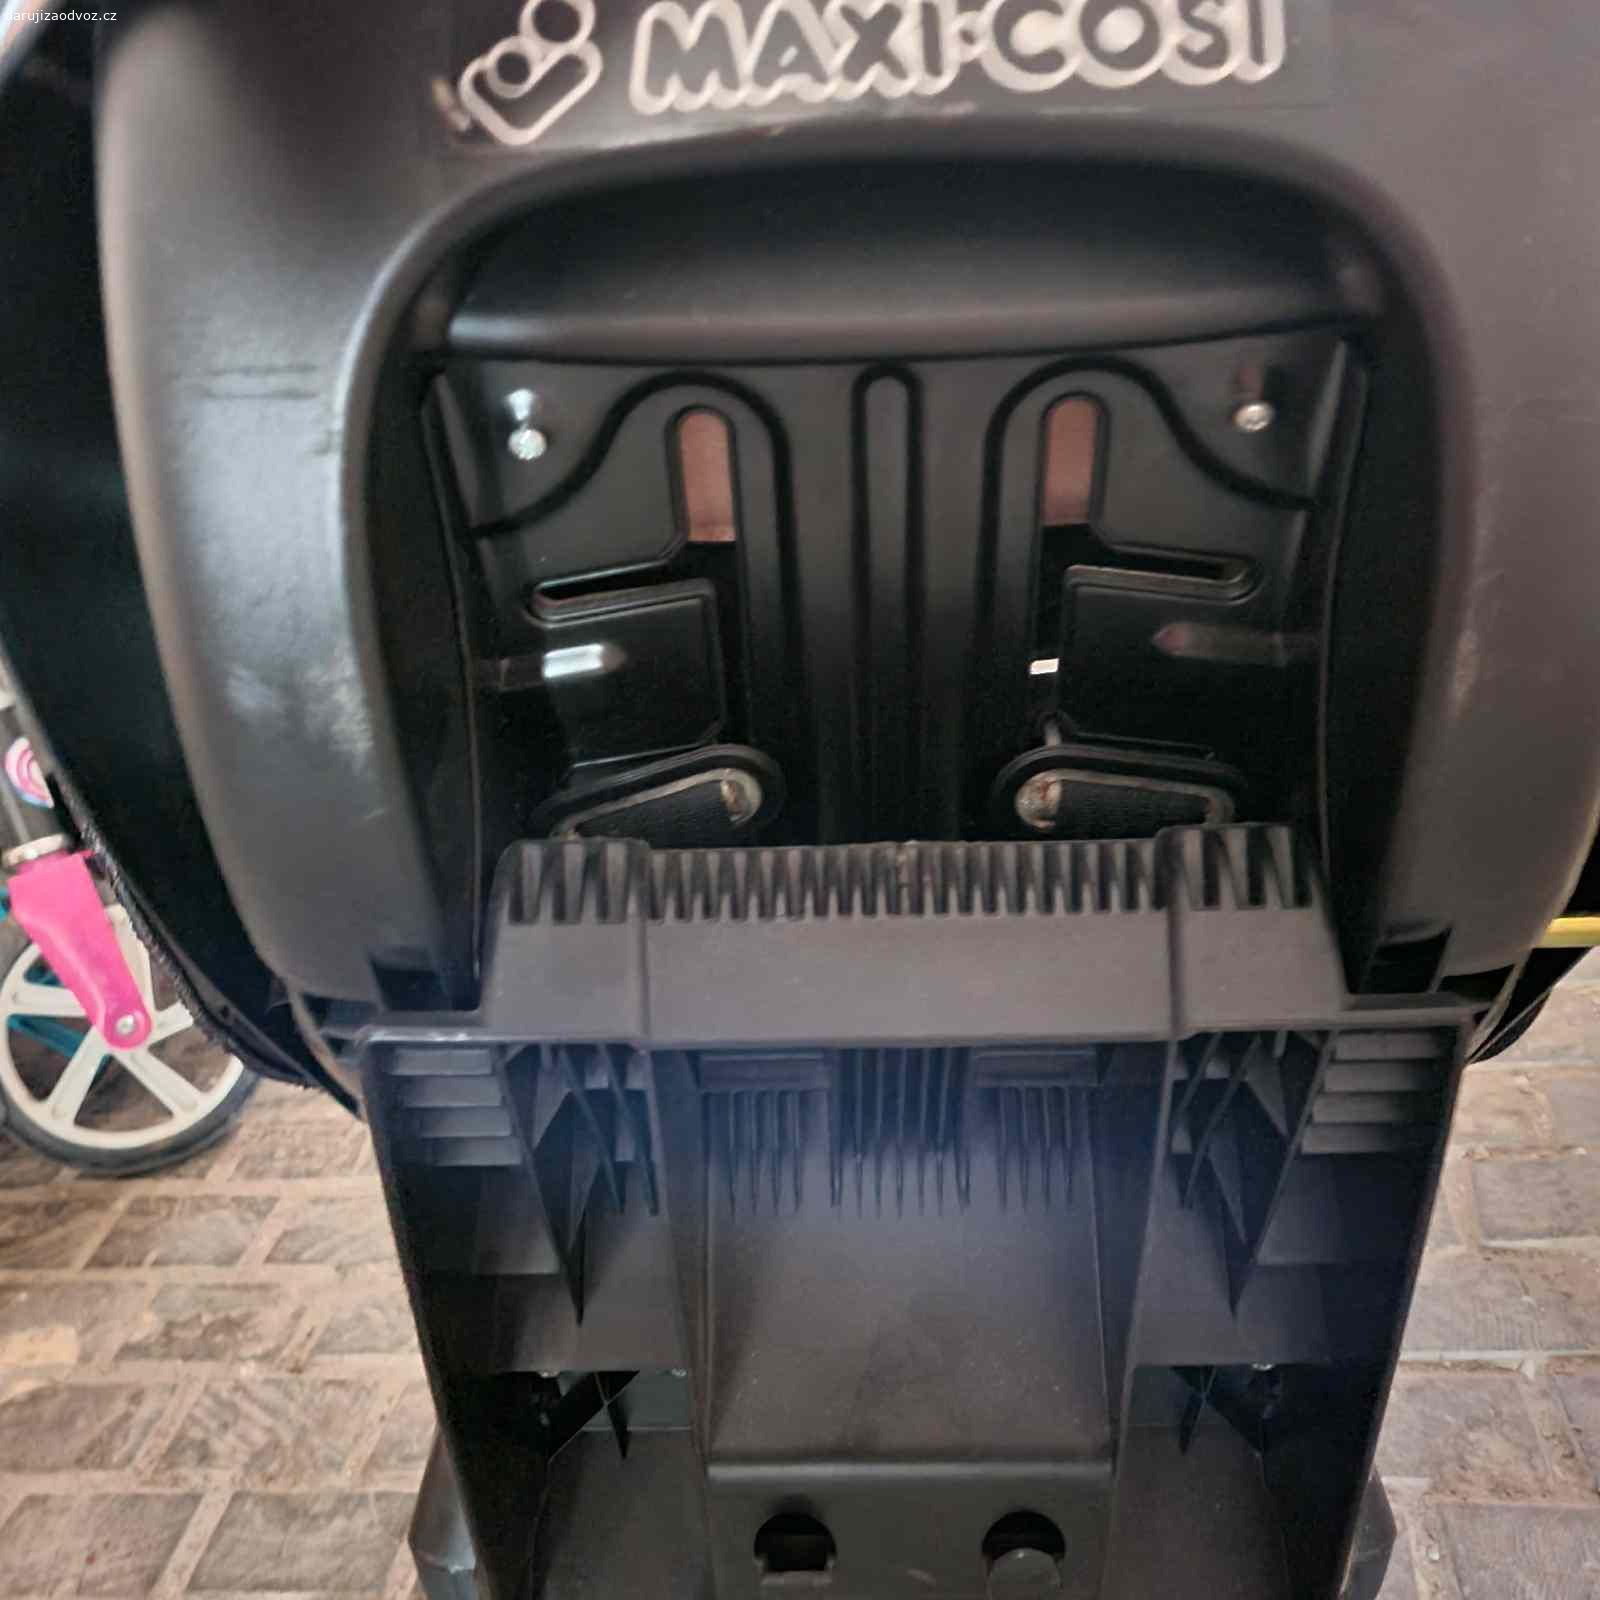 Darujeme dětskou autosedačku Maxi Cosi. Autosedačka Maxi Cosi, používaná, ale bez zásadních nedostatků, určena pro 9 - 18 kg. Isofix, bezpečnostní noha pro ukotvení, tříbodový bezpečnostní pás.